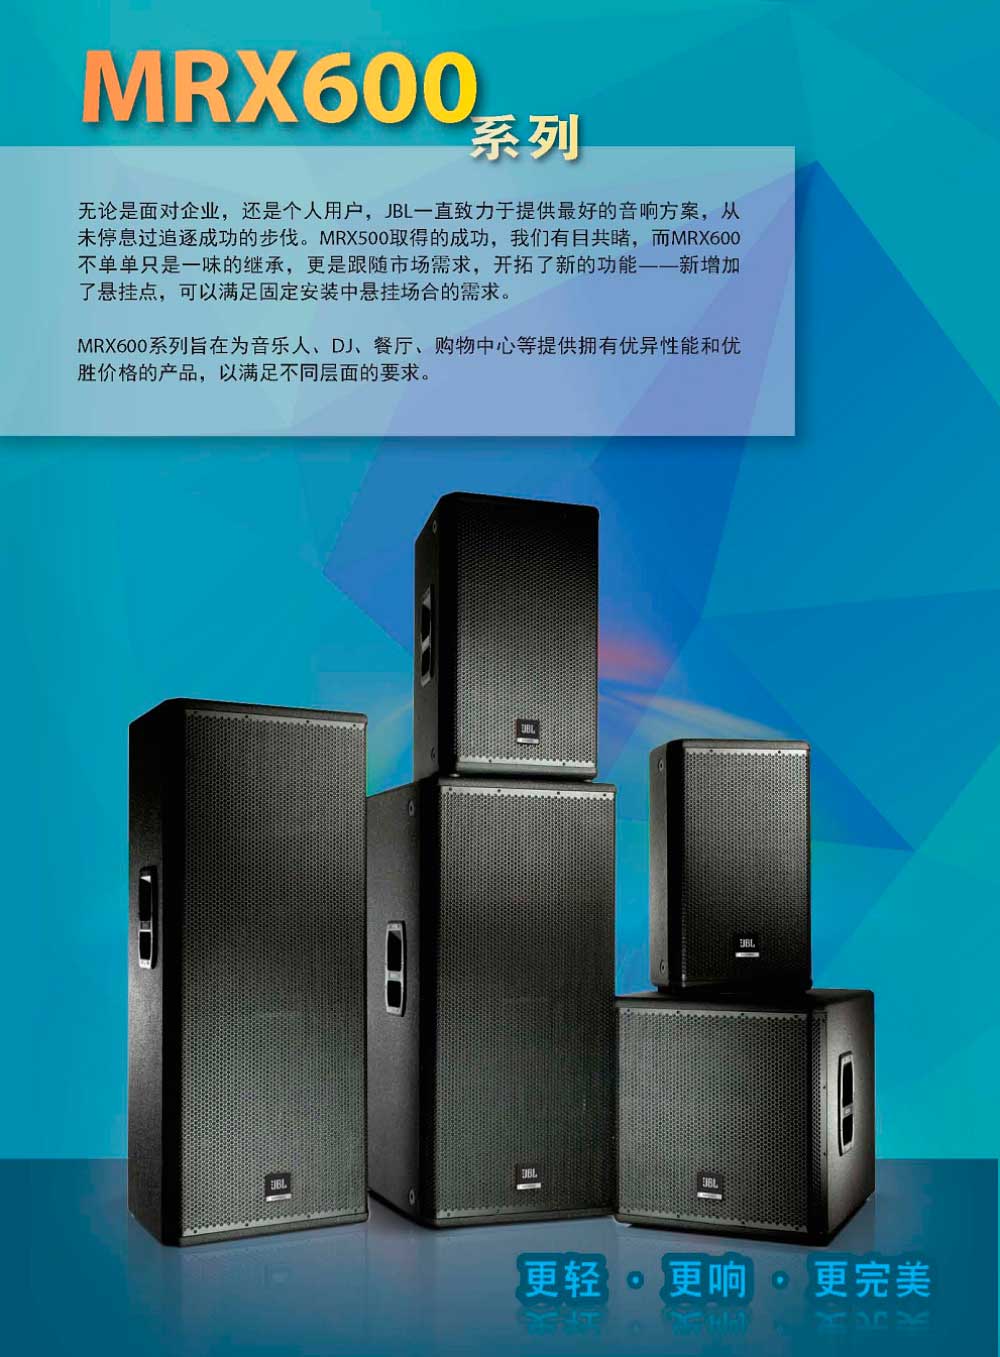 JBL MRX612M 音箱 专业音响  jbl音响中国官网 MRX600 美国jbl音响官网 JBL音响批发